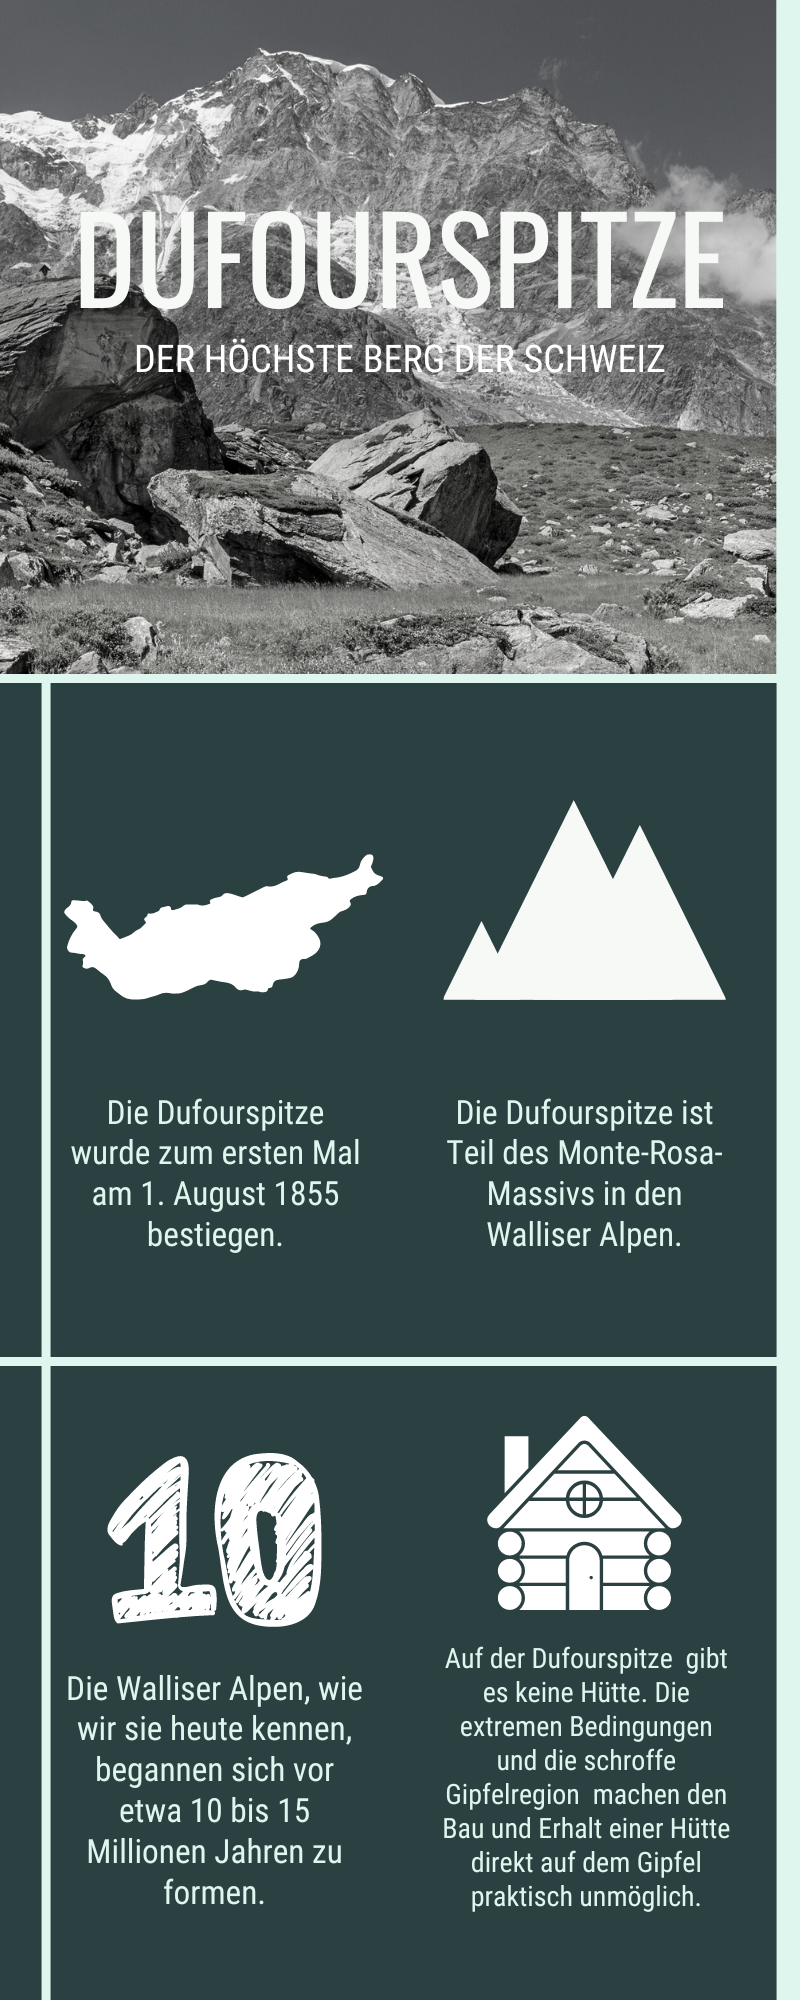 Eine Infografik über die Dufourspitze.